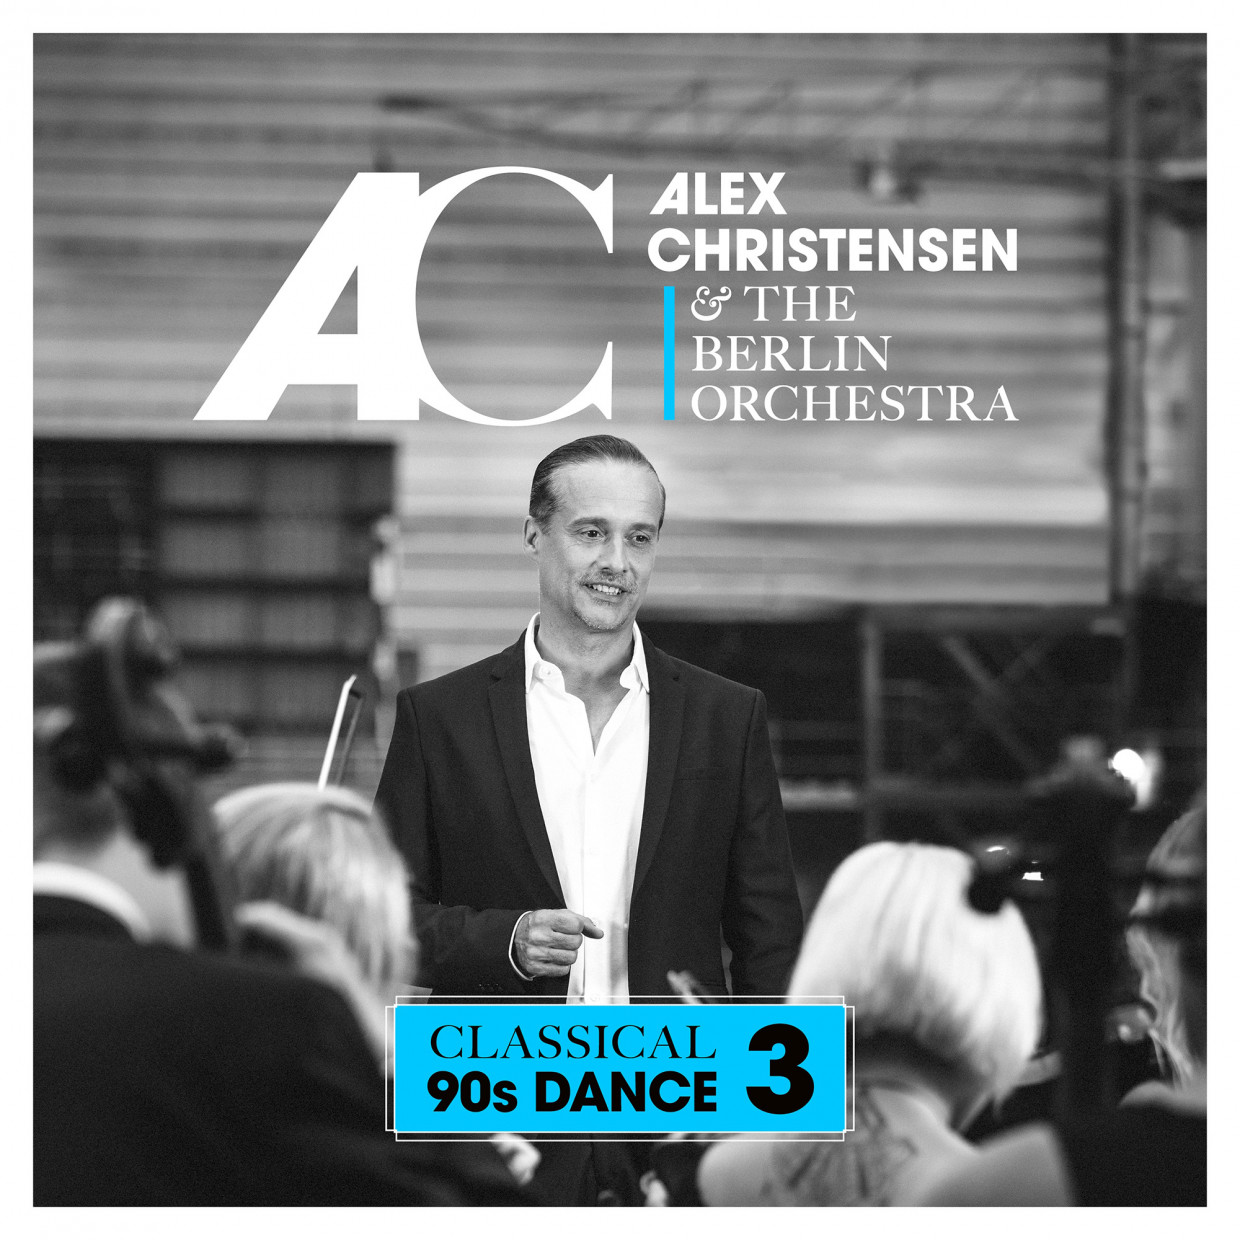 Alex Christensen & Berlin Orchestra „Classical 90s Dance 3” Dobra muzyka w trasę do samochodu.